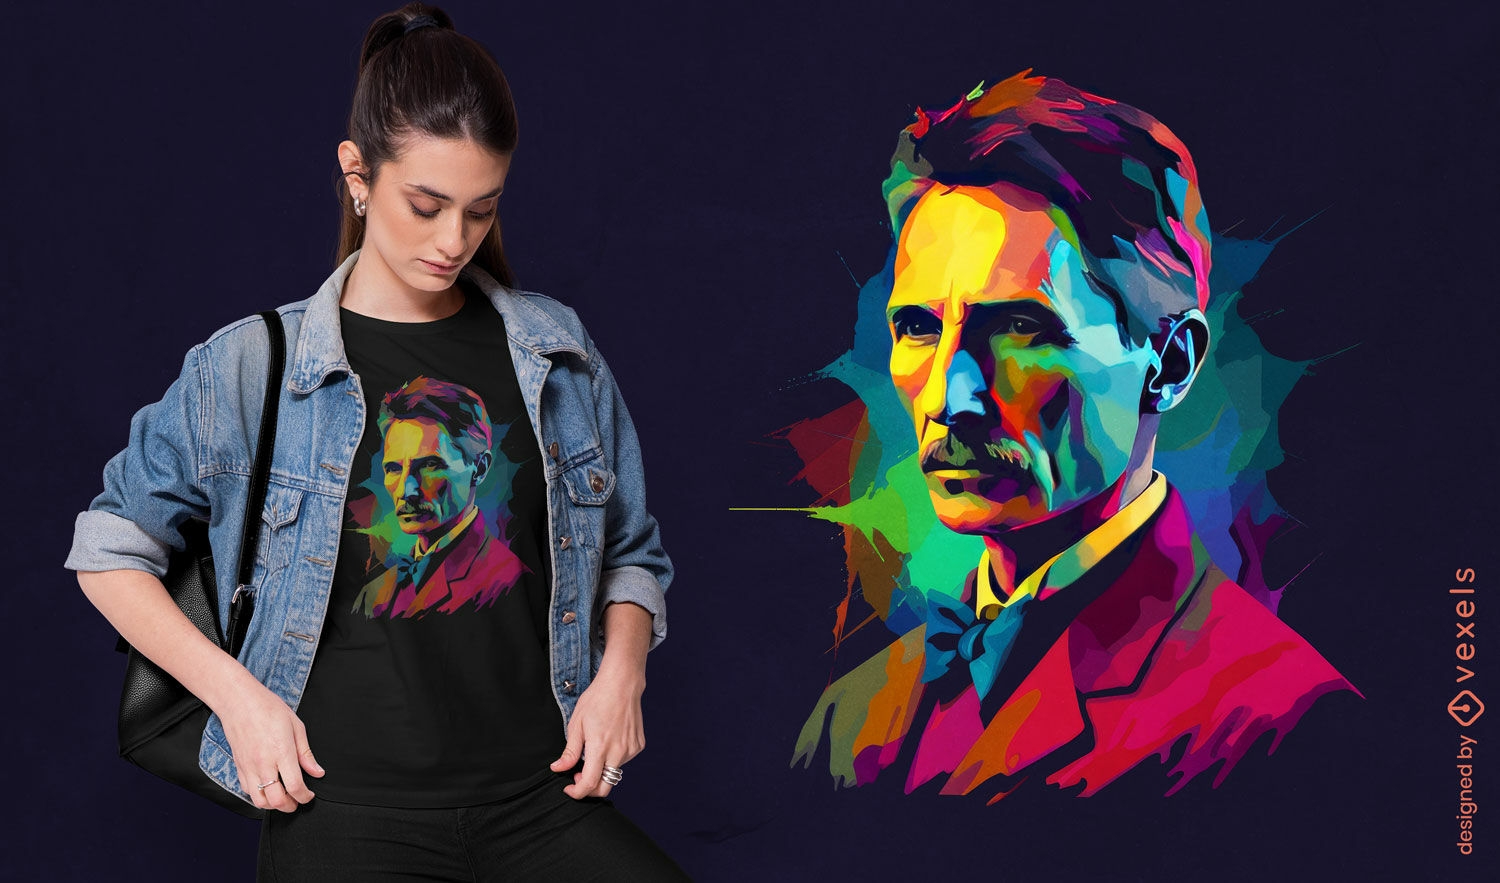 Dise?o colorido de camiseta tributo a Nikola Tesla.